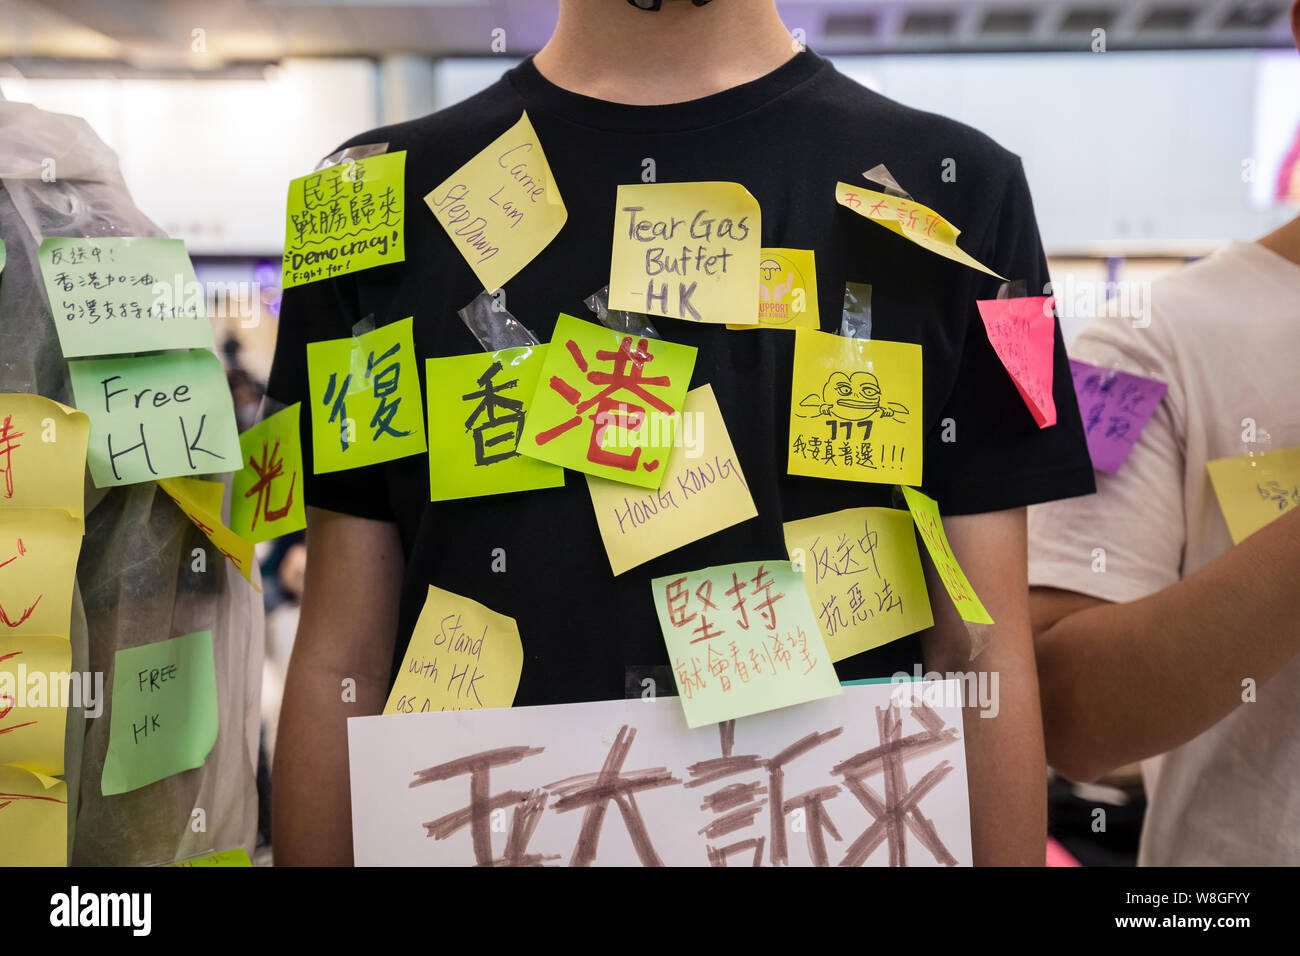 Eine Demonstrantin Handeln eine menschliche Lennon-mauer andere post-Meldungen auf seinem Körper während des Protestes am Flughafen zu lassen. Tausende Demonstranten in der Ankunftshalle des internationalen Flughafen Hong Kong unter der Bezeichnung "Grüße aus HKers Versammlung" die Aufmerksamkeit der internationale Reisende, die gerade in Hongkong über die aktuellen Unruhen in der Stadt gelandet zu fangen. Stockfoto